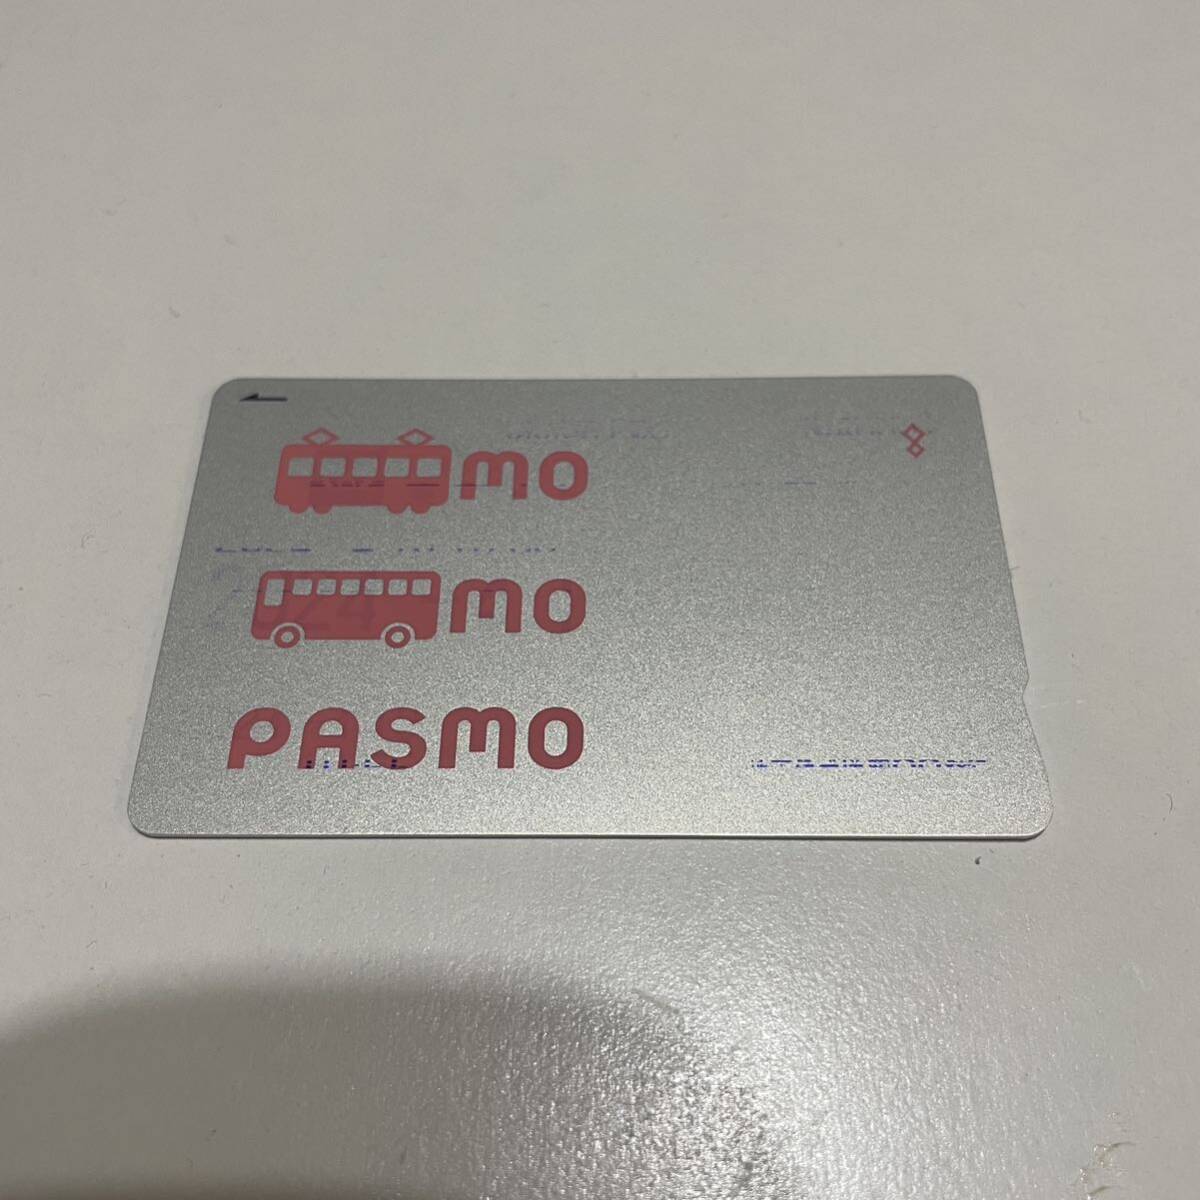  нет регистрация название PASMO осталось сумма 0 иен 